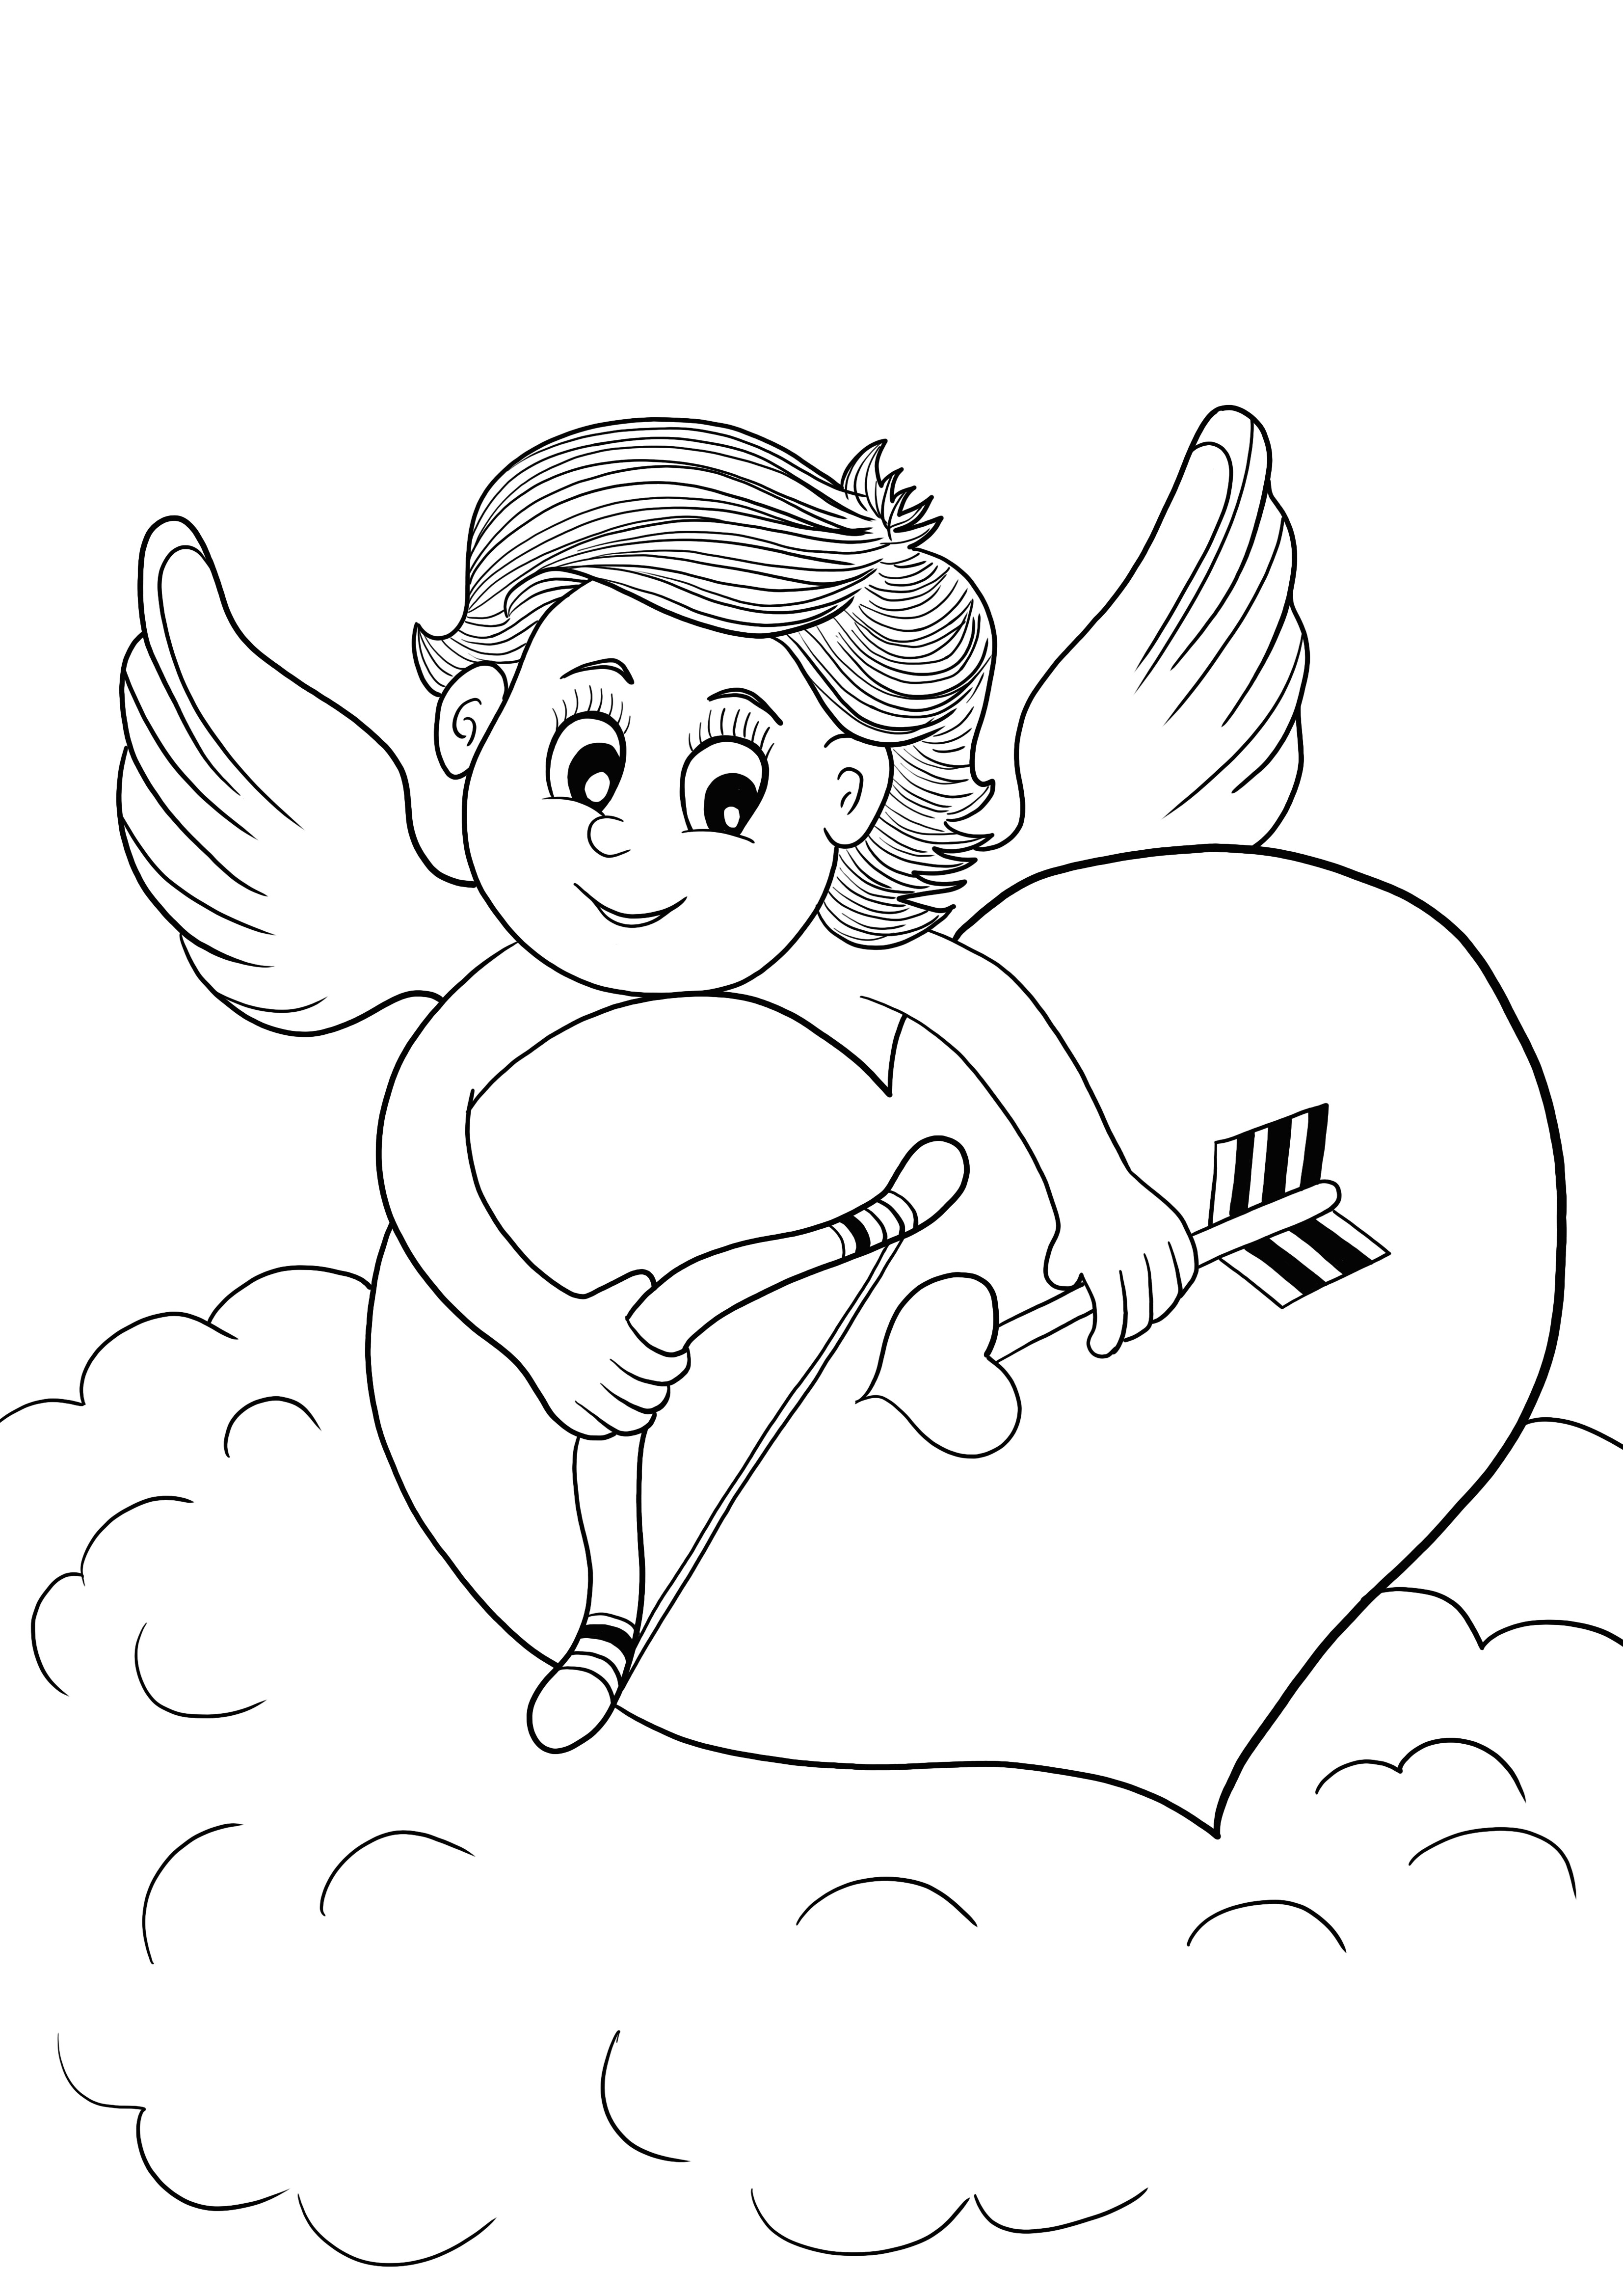 Cupidon sosteniendo un corazon para imprimir gratis y a color